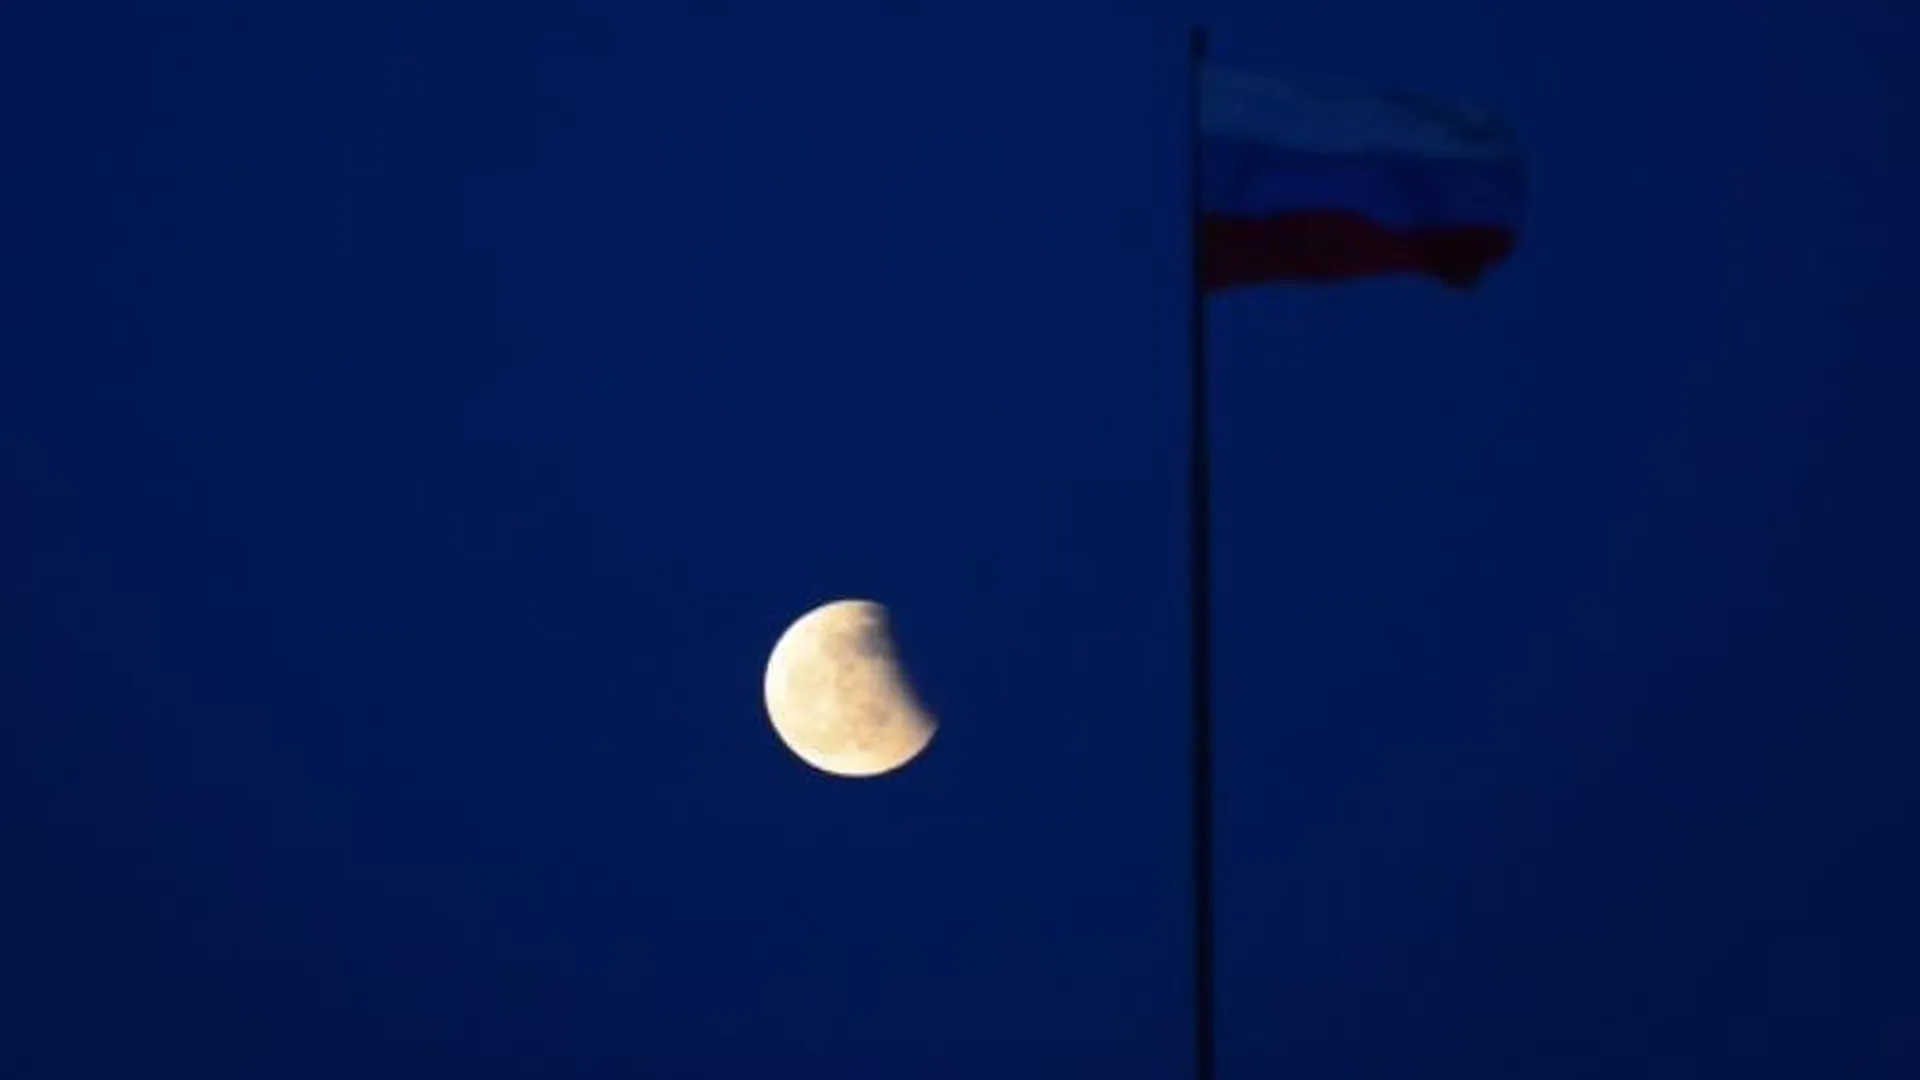 Посмотреть на лунное затмение можно будет в столице 11 февраля